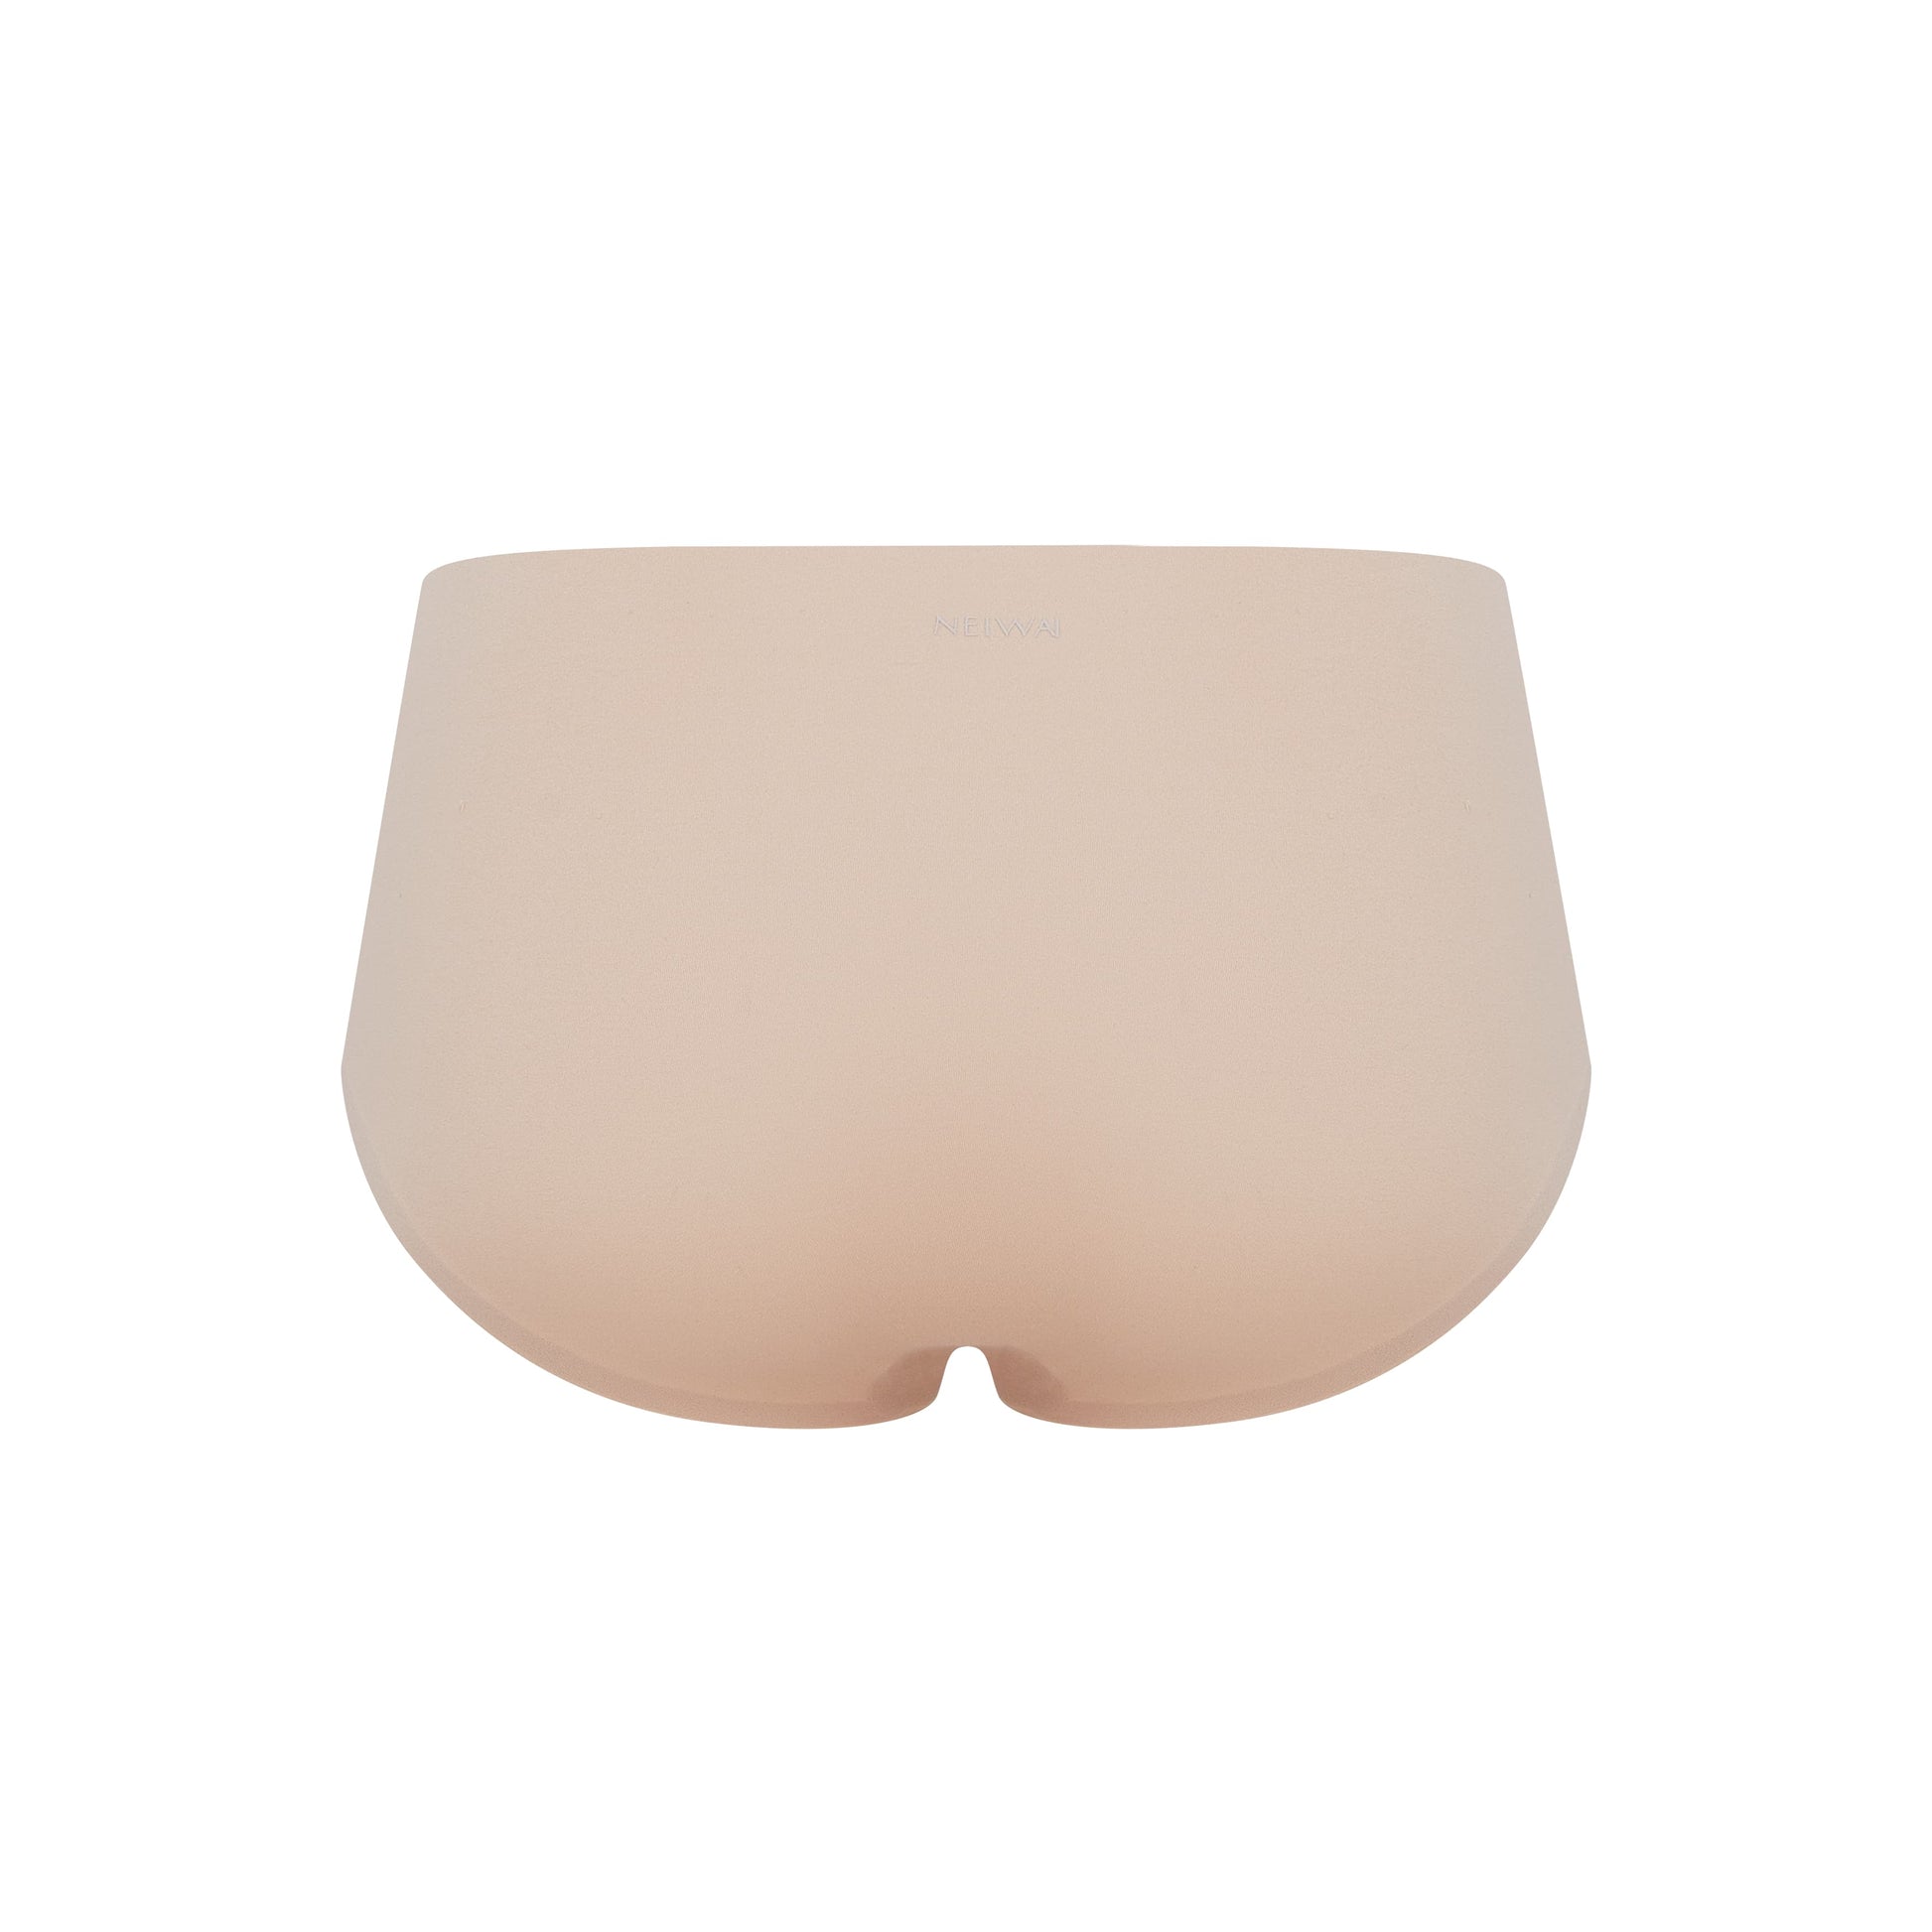 Flat lay image of back side of beige underwear